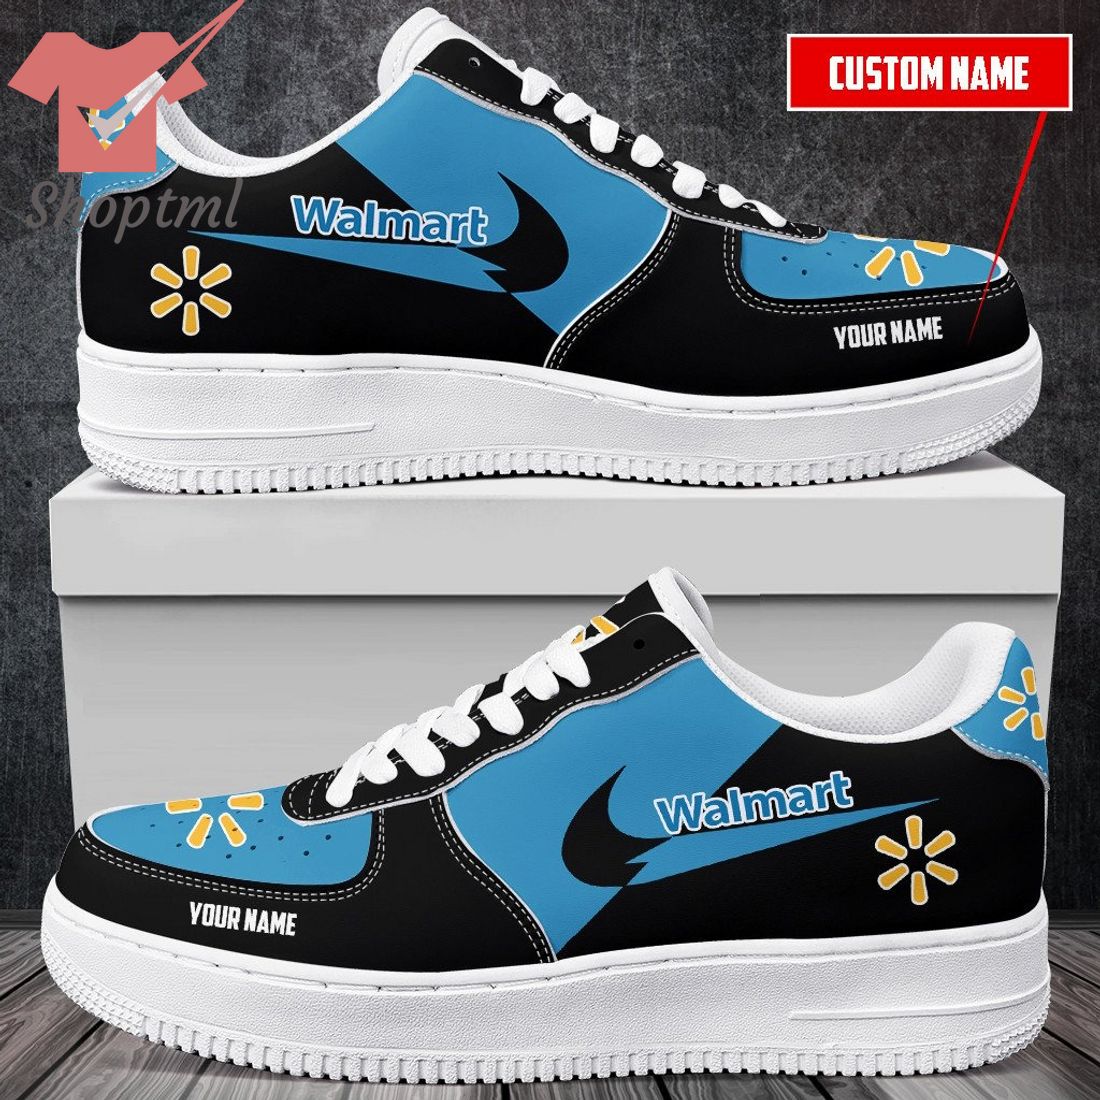 Walmart Custom Name Nike Air Force One Shoes